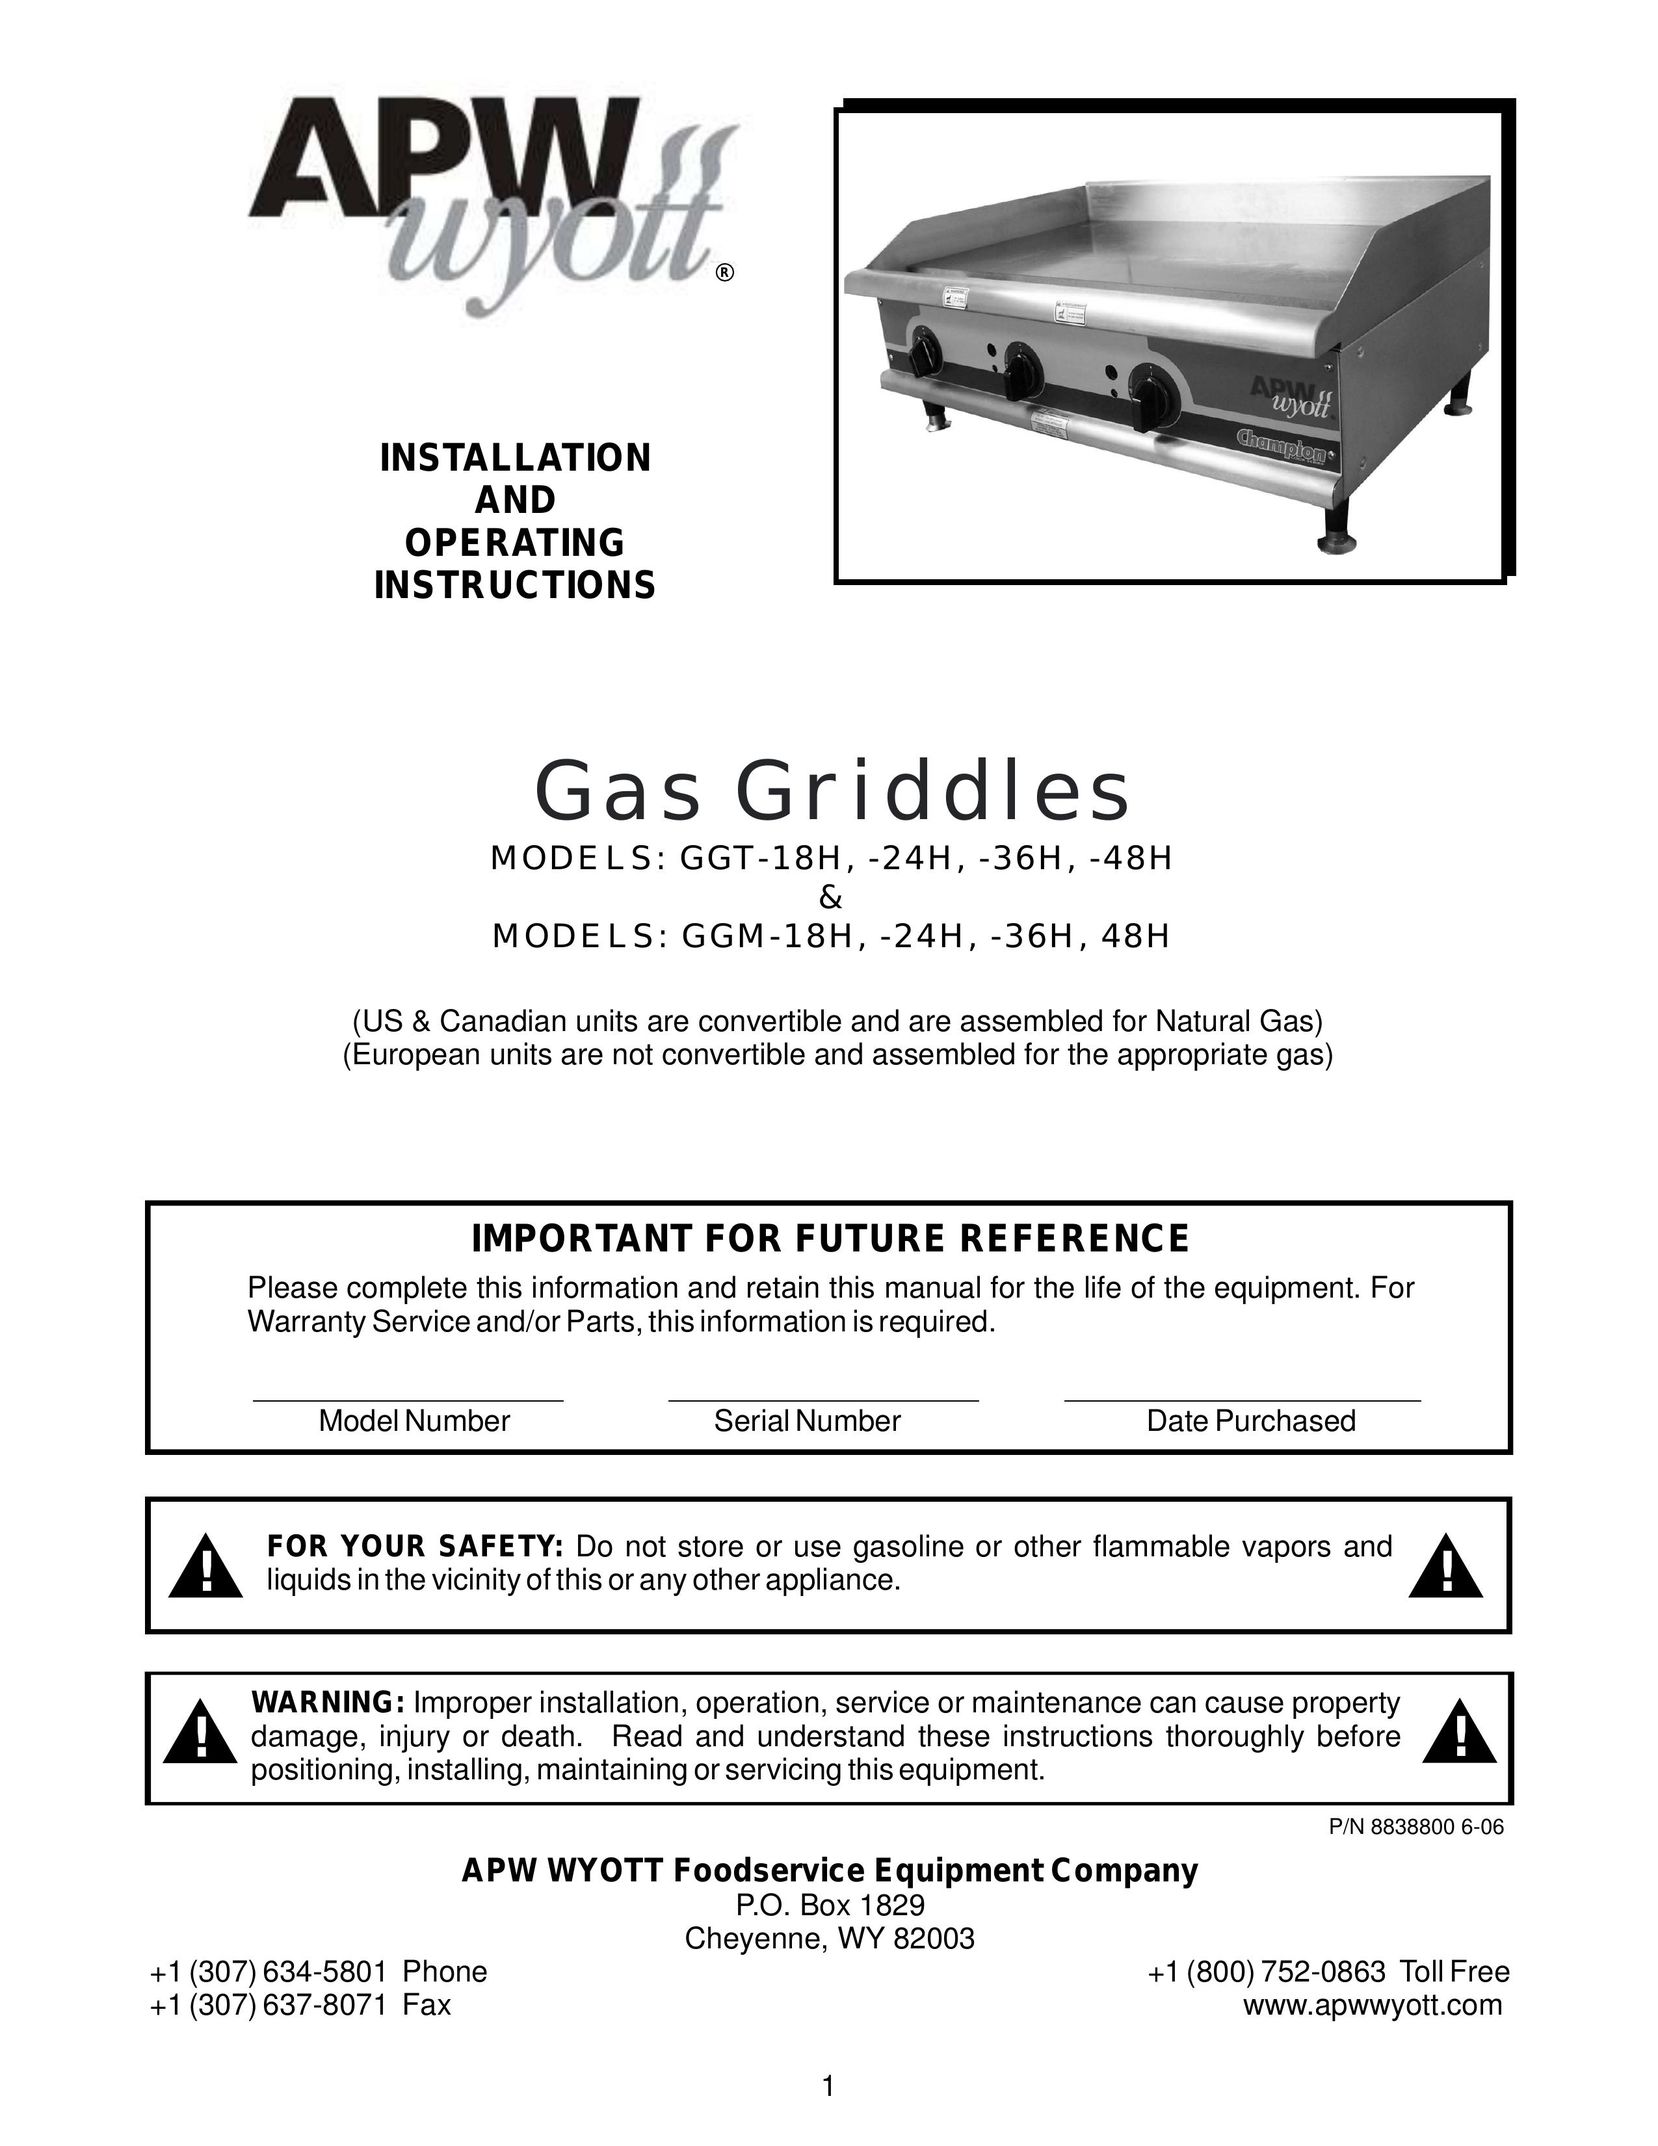 APW Wyott GGM-36H Griddle User Manual